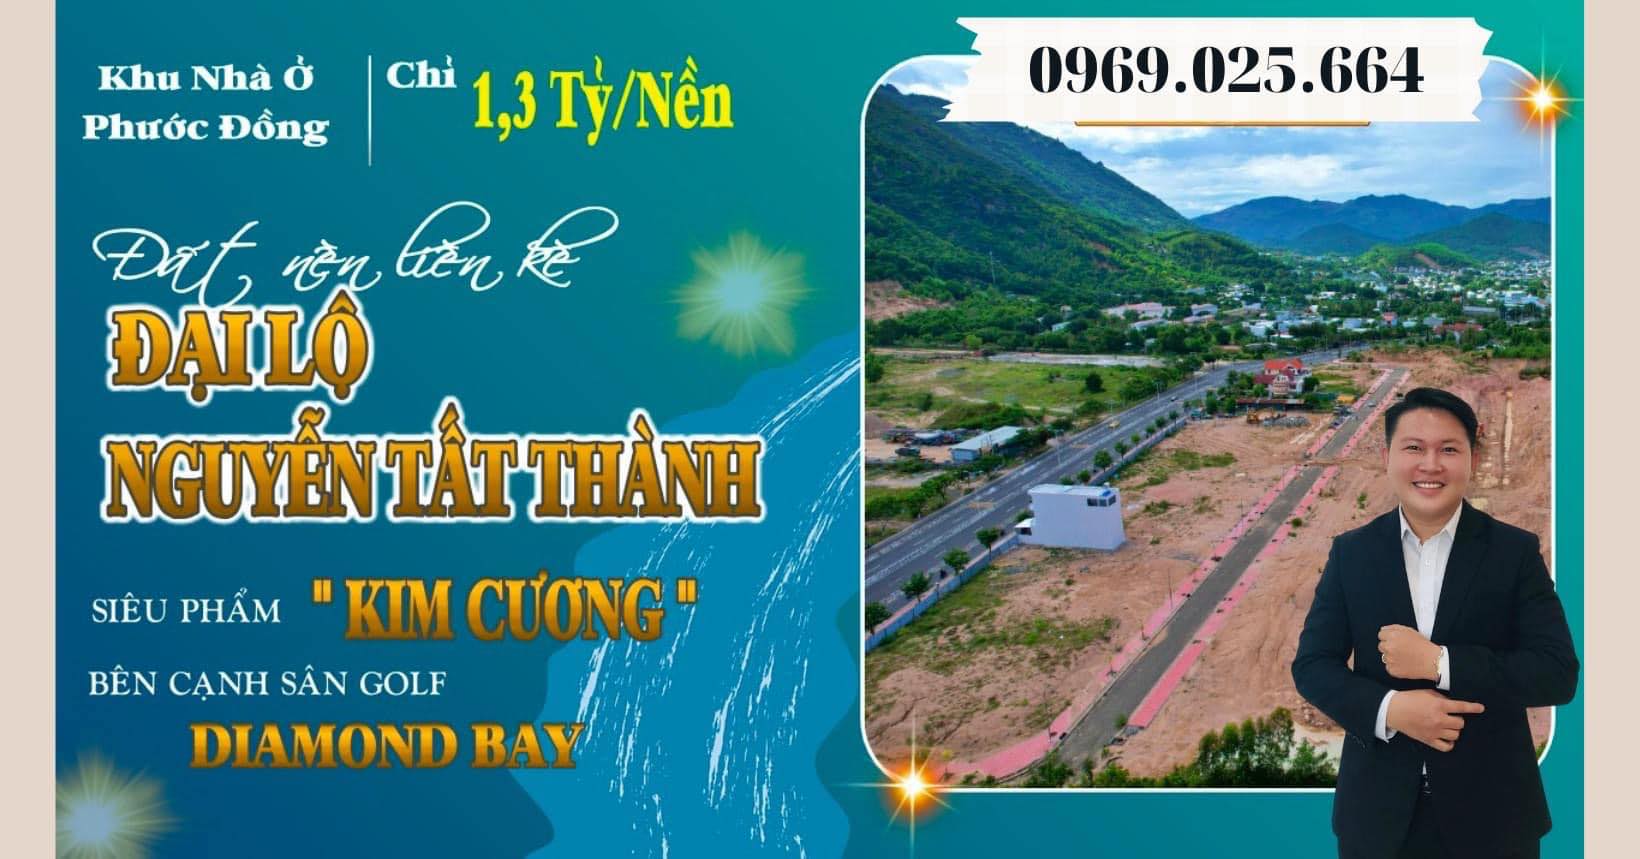 Đất nền Phước Đồng Tp Nha Trang : Nóng từng giờ, sinh lợi từng ngày.